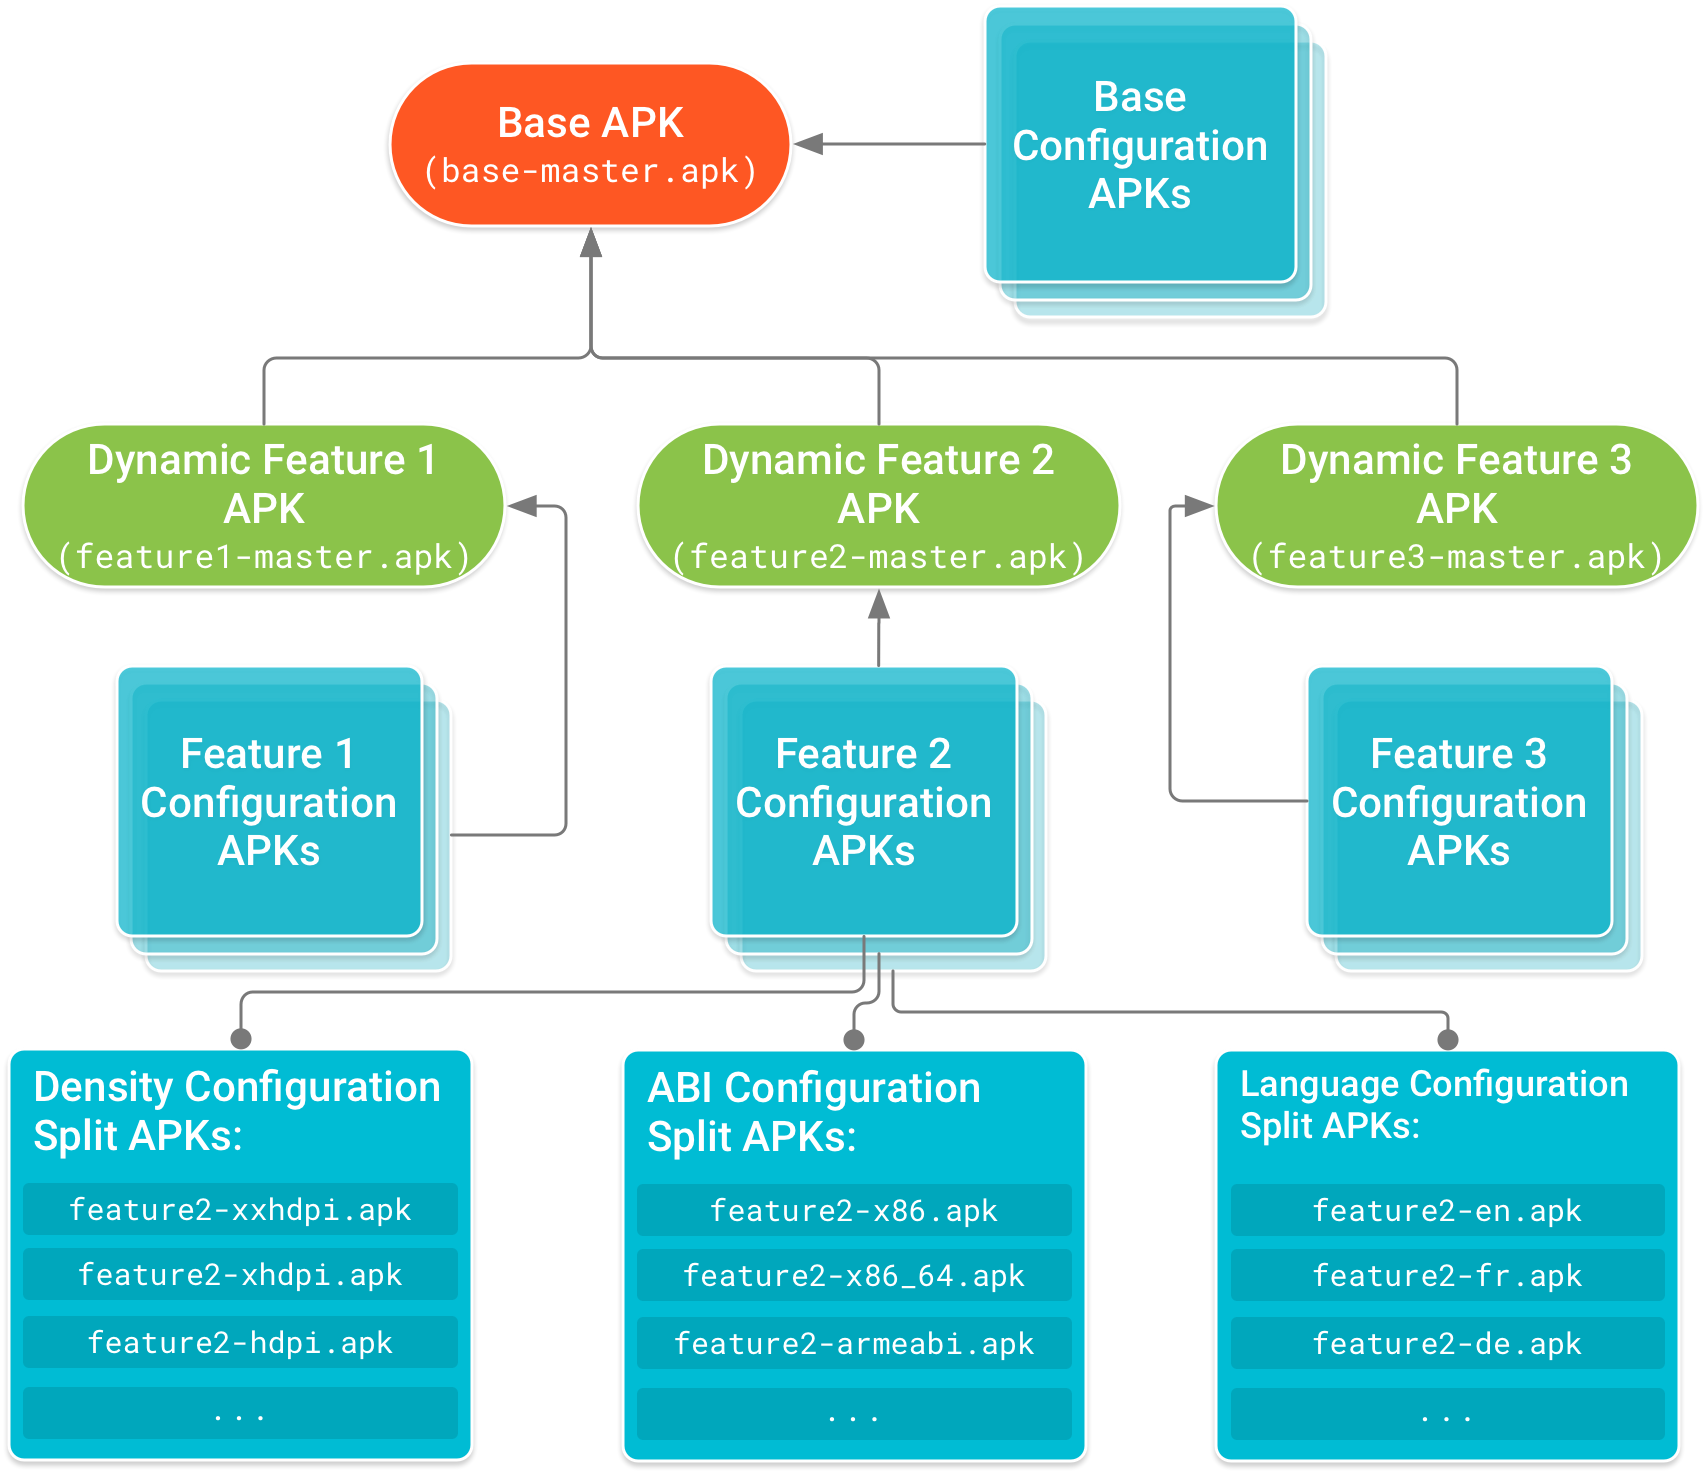 El APK de base forma la cabeza del árbol, y los APK de funciones dependen de él. Los APK de configuración, que incluyen código y recursos específicos según la configuración del dispositivo para el APK de base y cada APK de módulos de funciones, forman los nodos de hoja del árbol de dependencias.